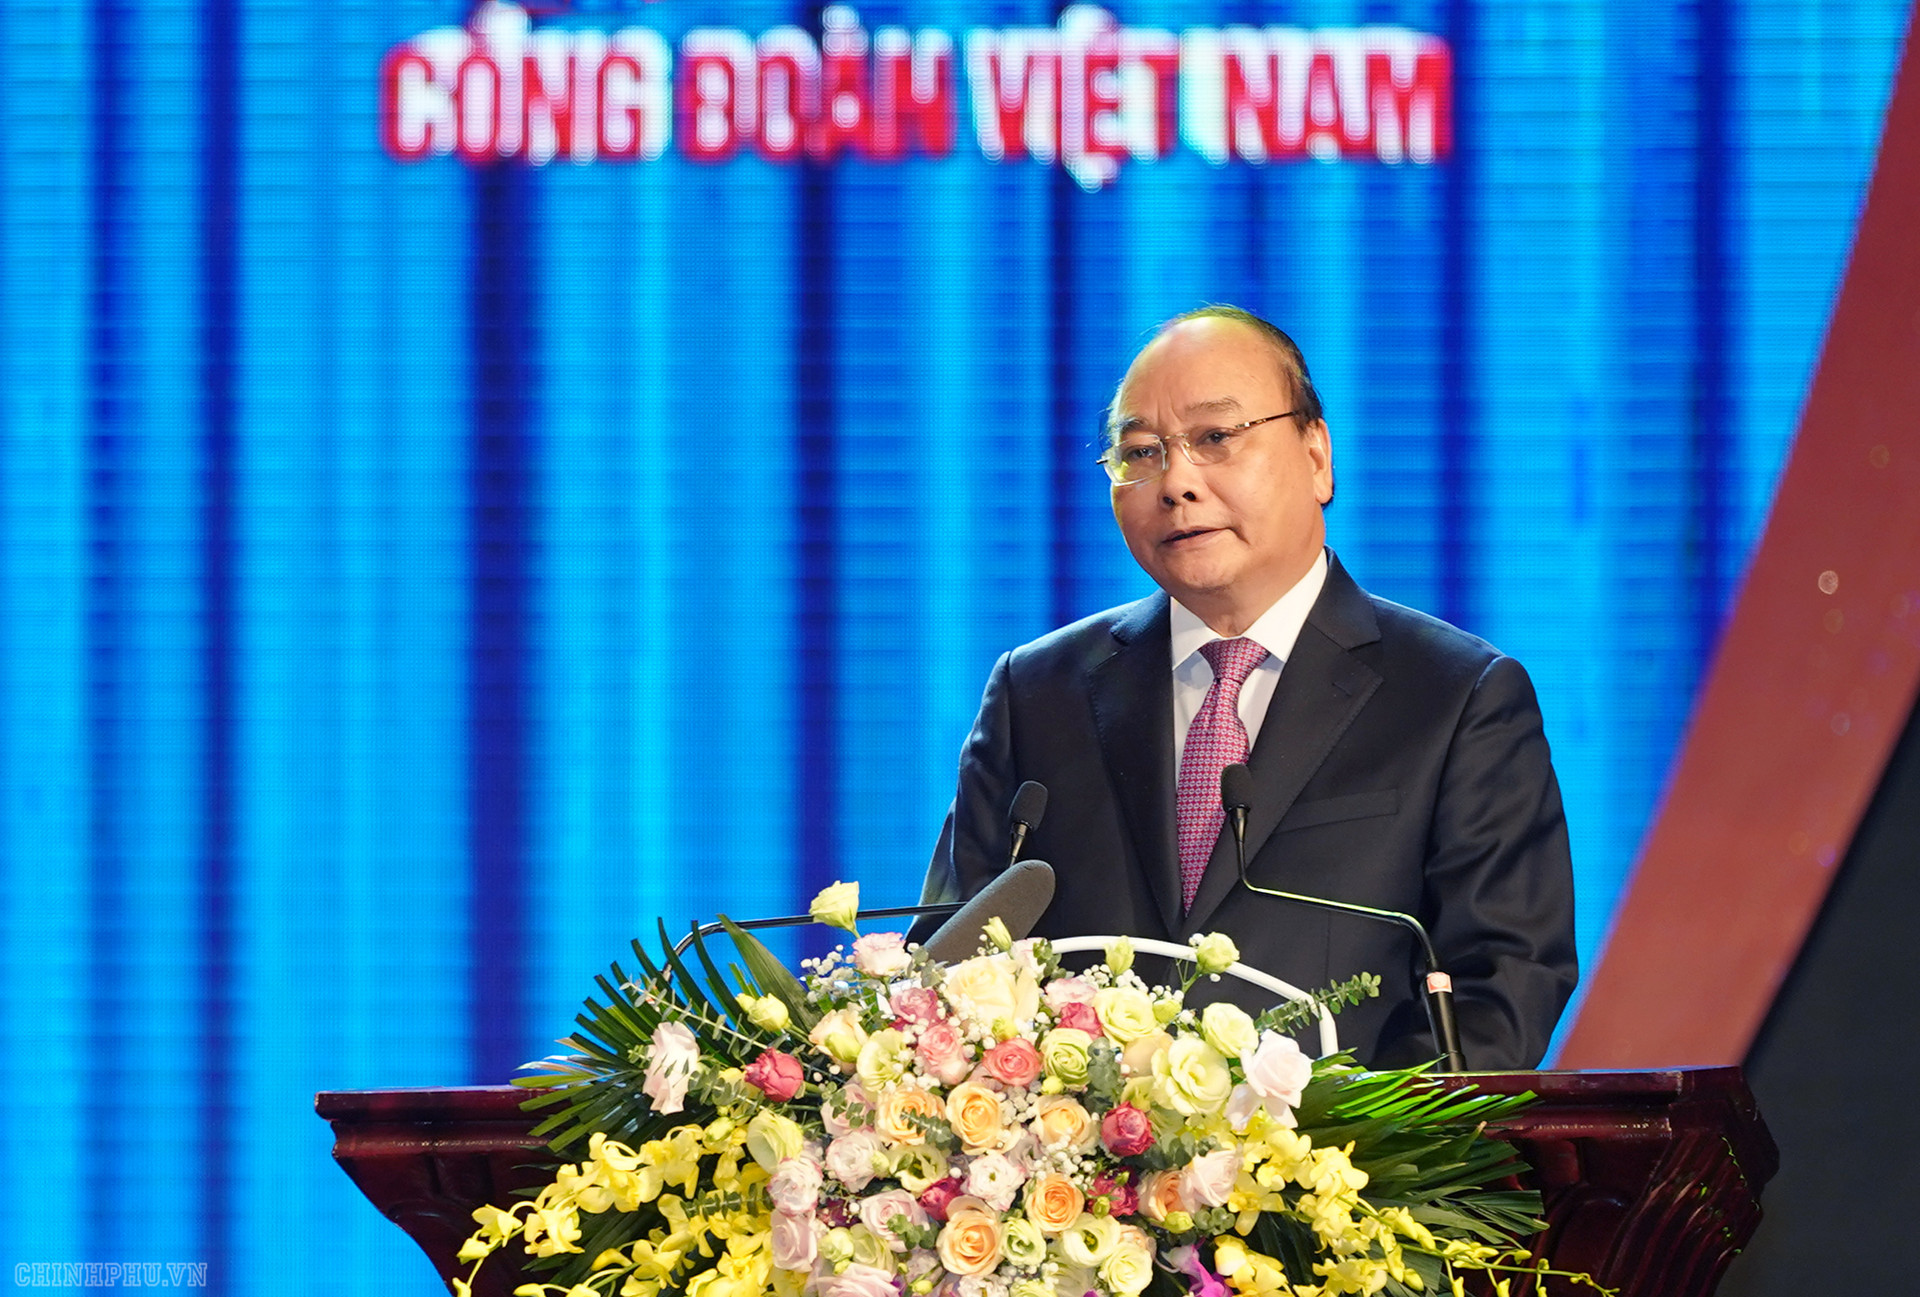 Thủ tướng dự lễ kỷ niệm 90 năm thành lập Công đoàn Việt Nam